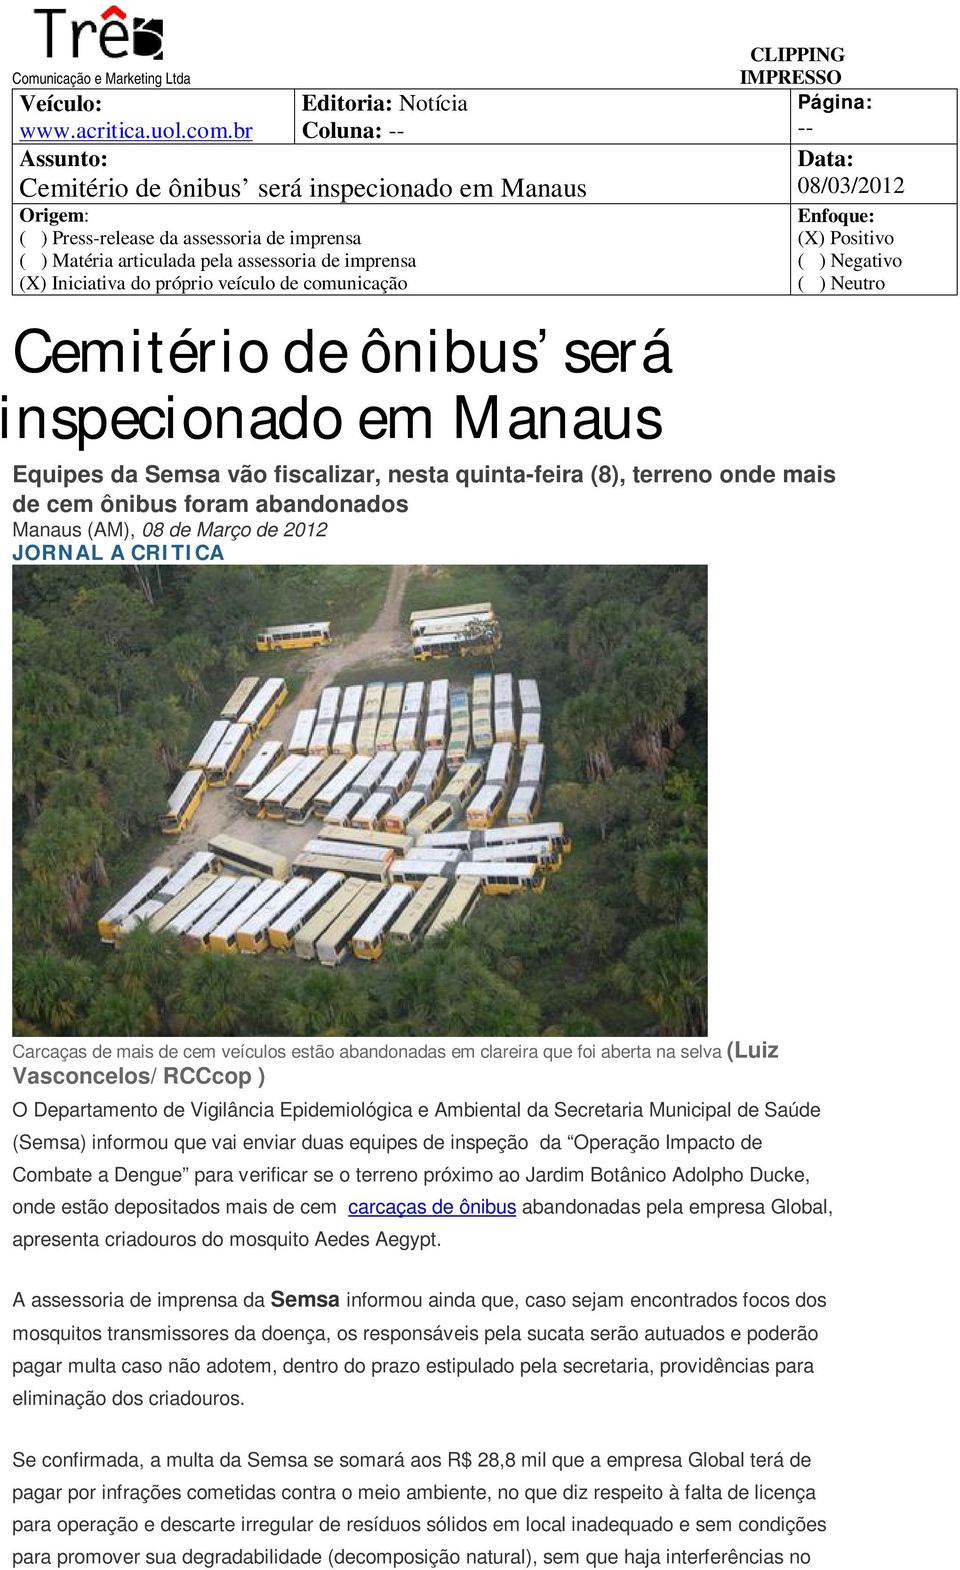 Manaus -- Equipes da Semsa vão fiscalizar, nesta quinta-feira (8), terreno onde mais de cem ônibus foram abandonados Manaus (AM), 08 de Março de 2012 JORNAL A CRITICA Carcaças de mais de cem veículos